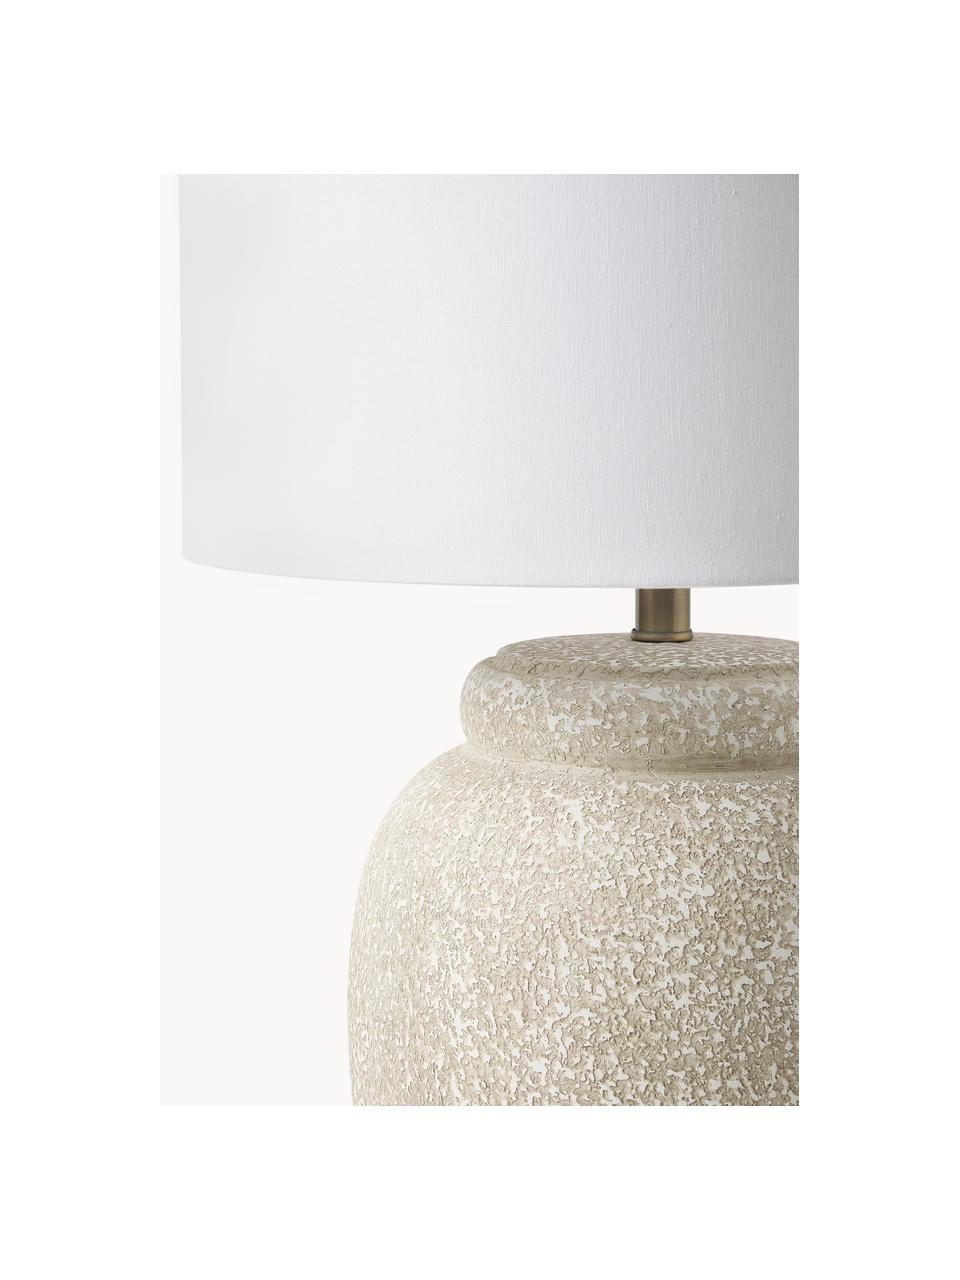 Grote tafellamp Bodhi met keramische voet, Lampenkap: linnen, Lampvoet: keramiek, Wit, beige, Ø 43 x H 71 cm